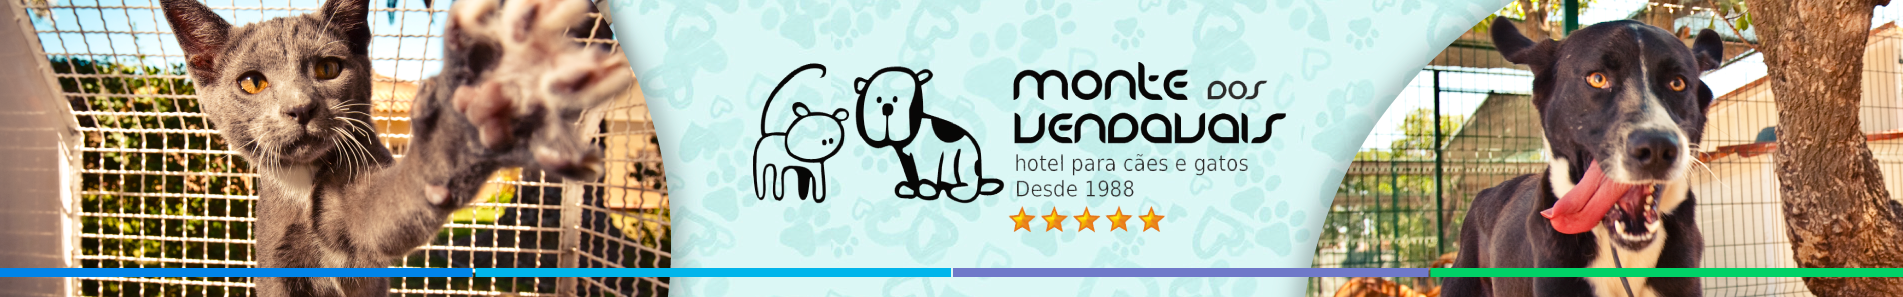 Monte dos Vendavais - Hotel para Cães e Gatos